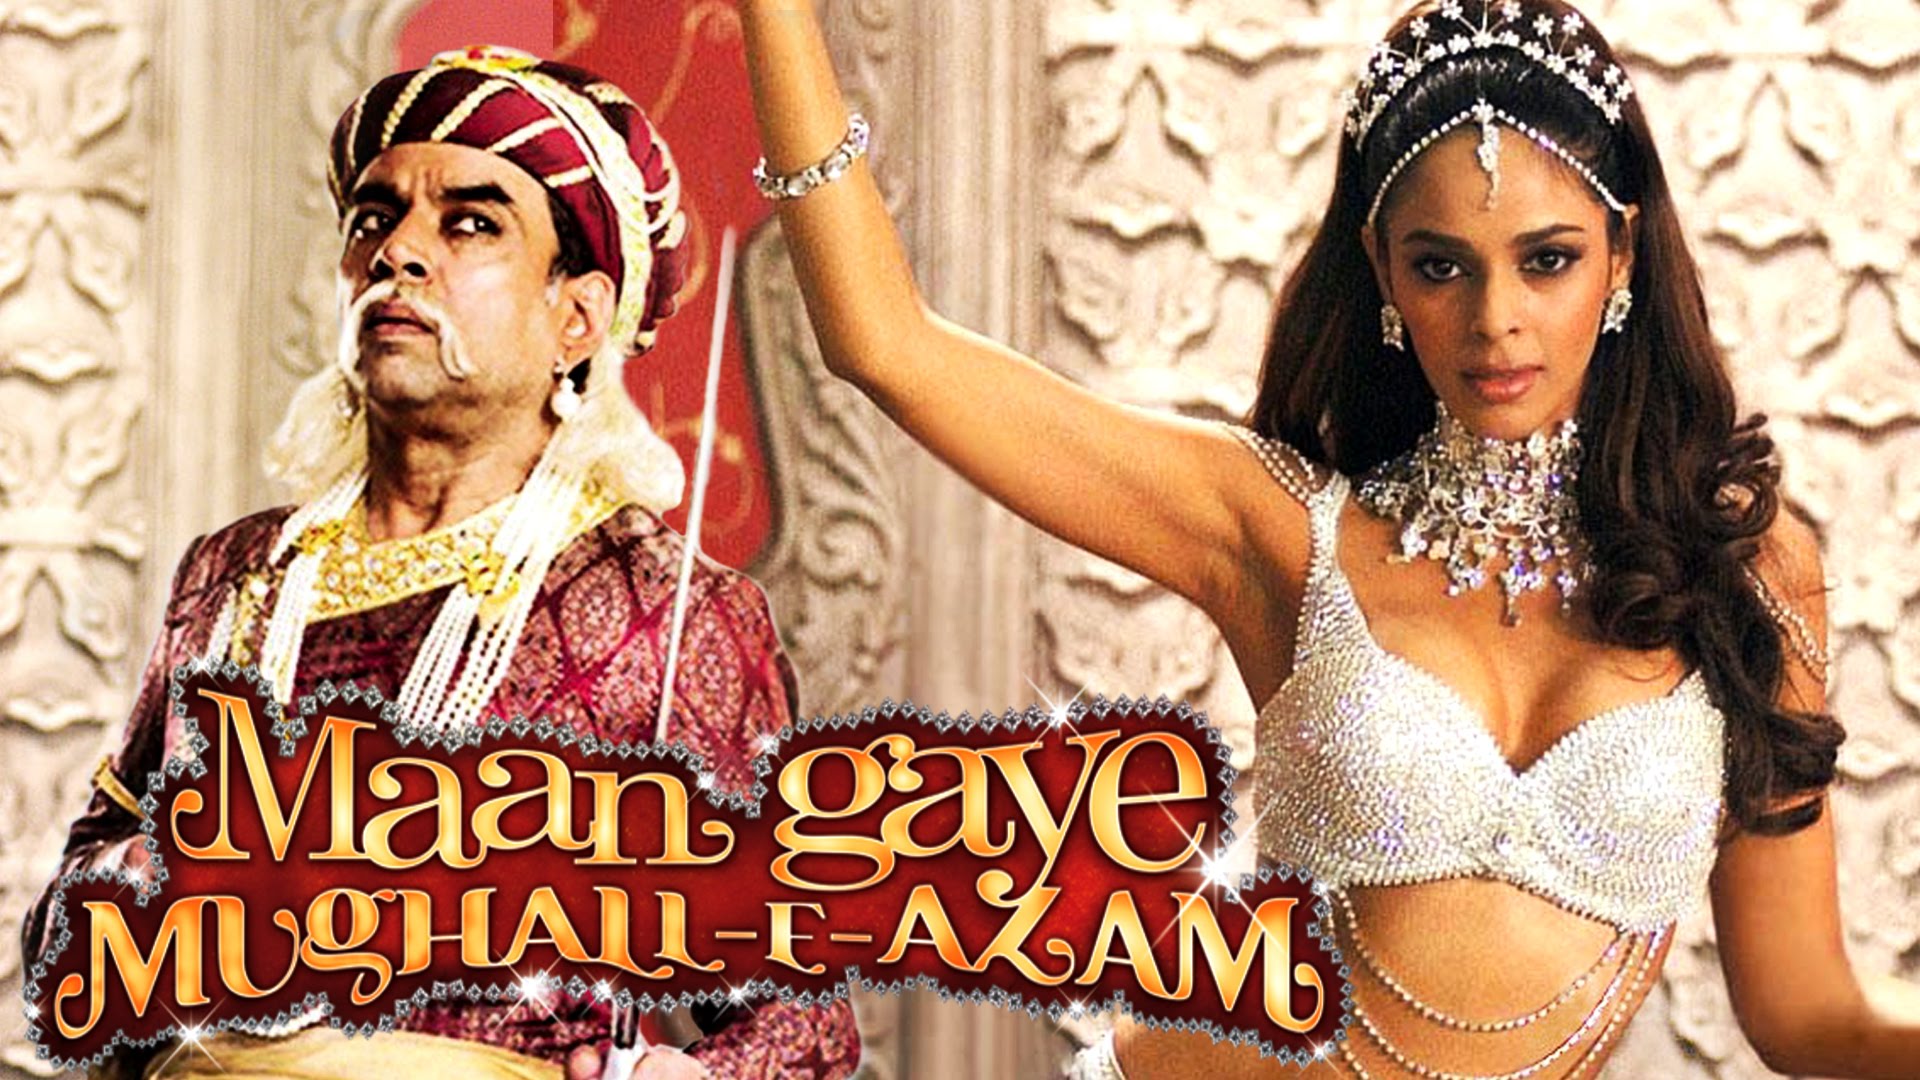 Maan Gaye Mughall-E-Azam 2 movie in hindi download